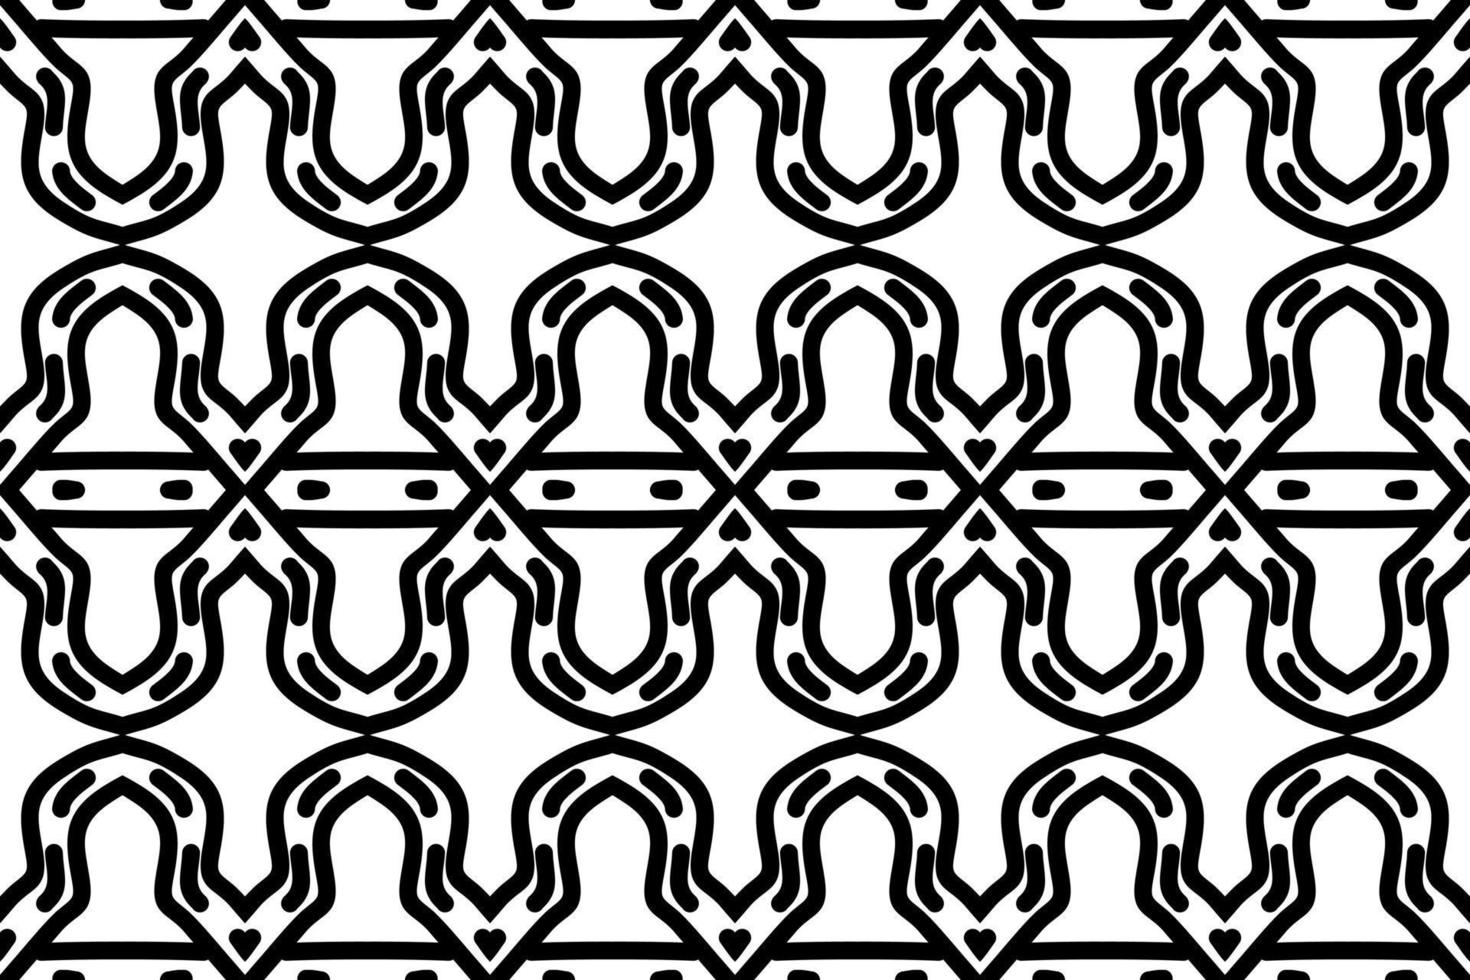 fondo sencillo. patrón transparente blanco y negro vector